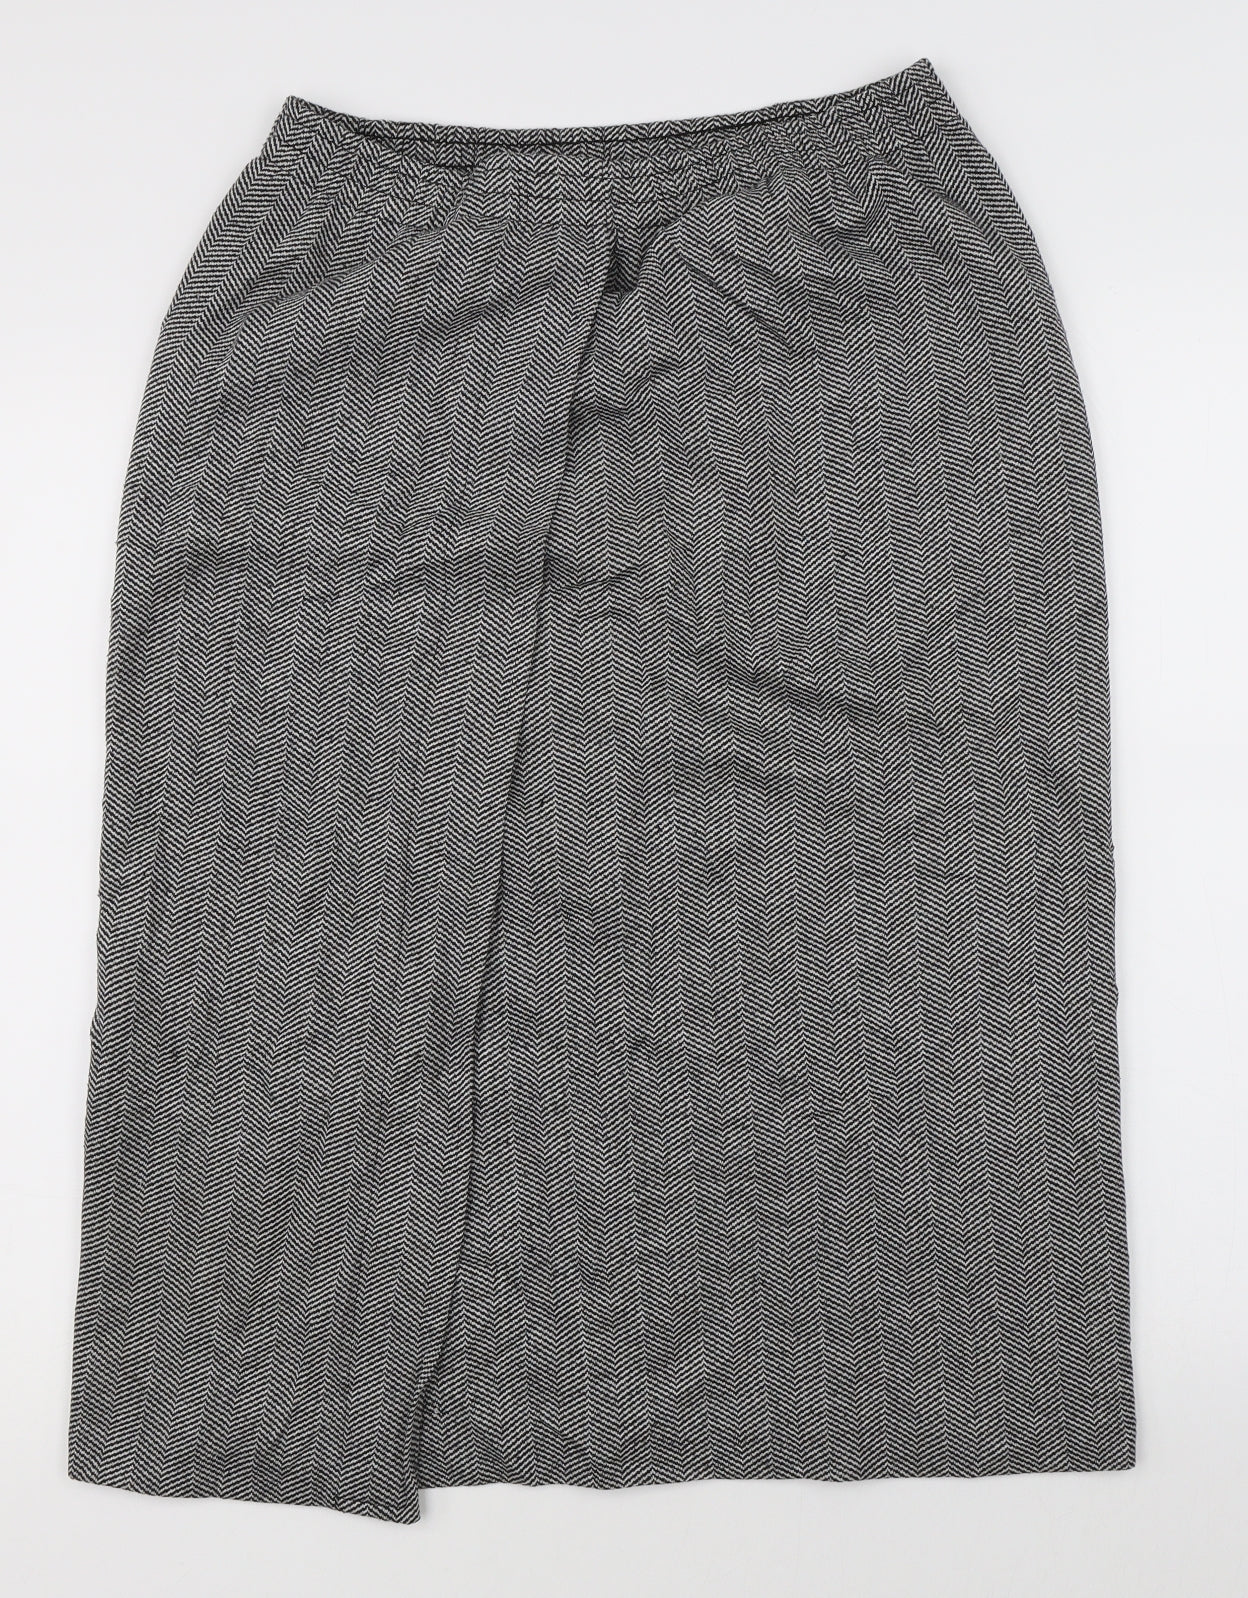 WEEKENDERS Womens Grey Herringbone  A-Line Skirt Size M